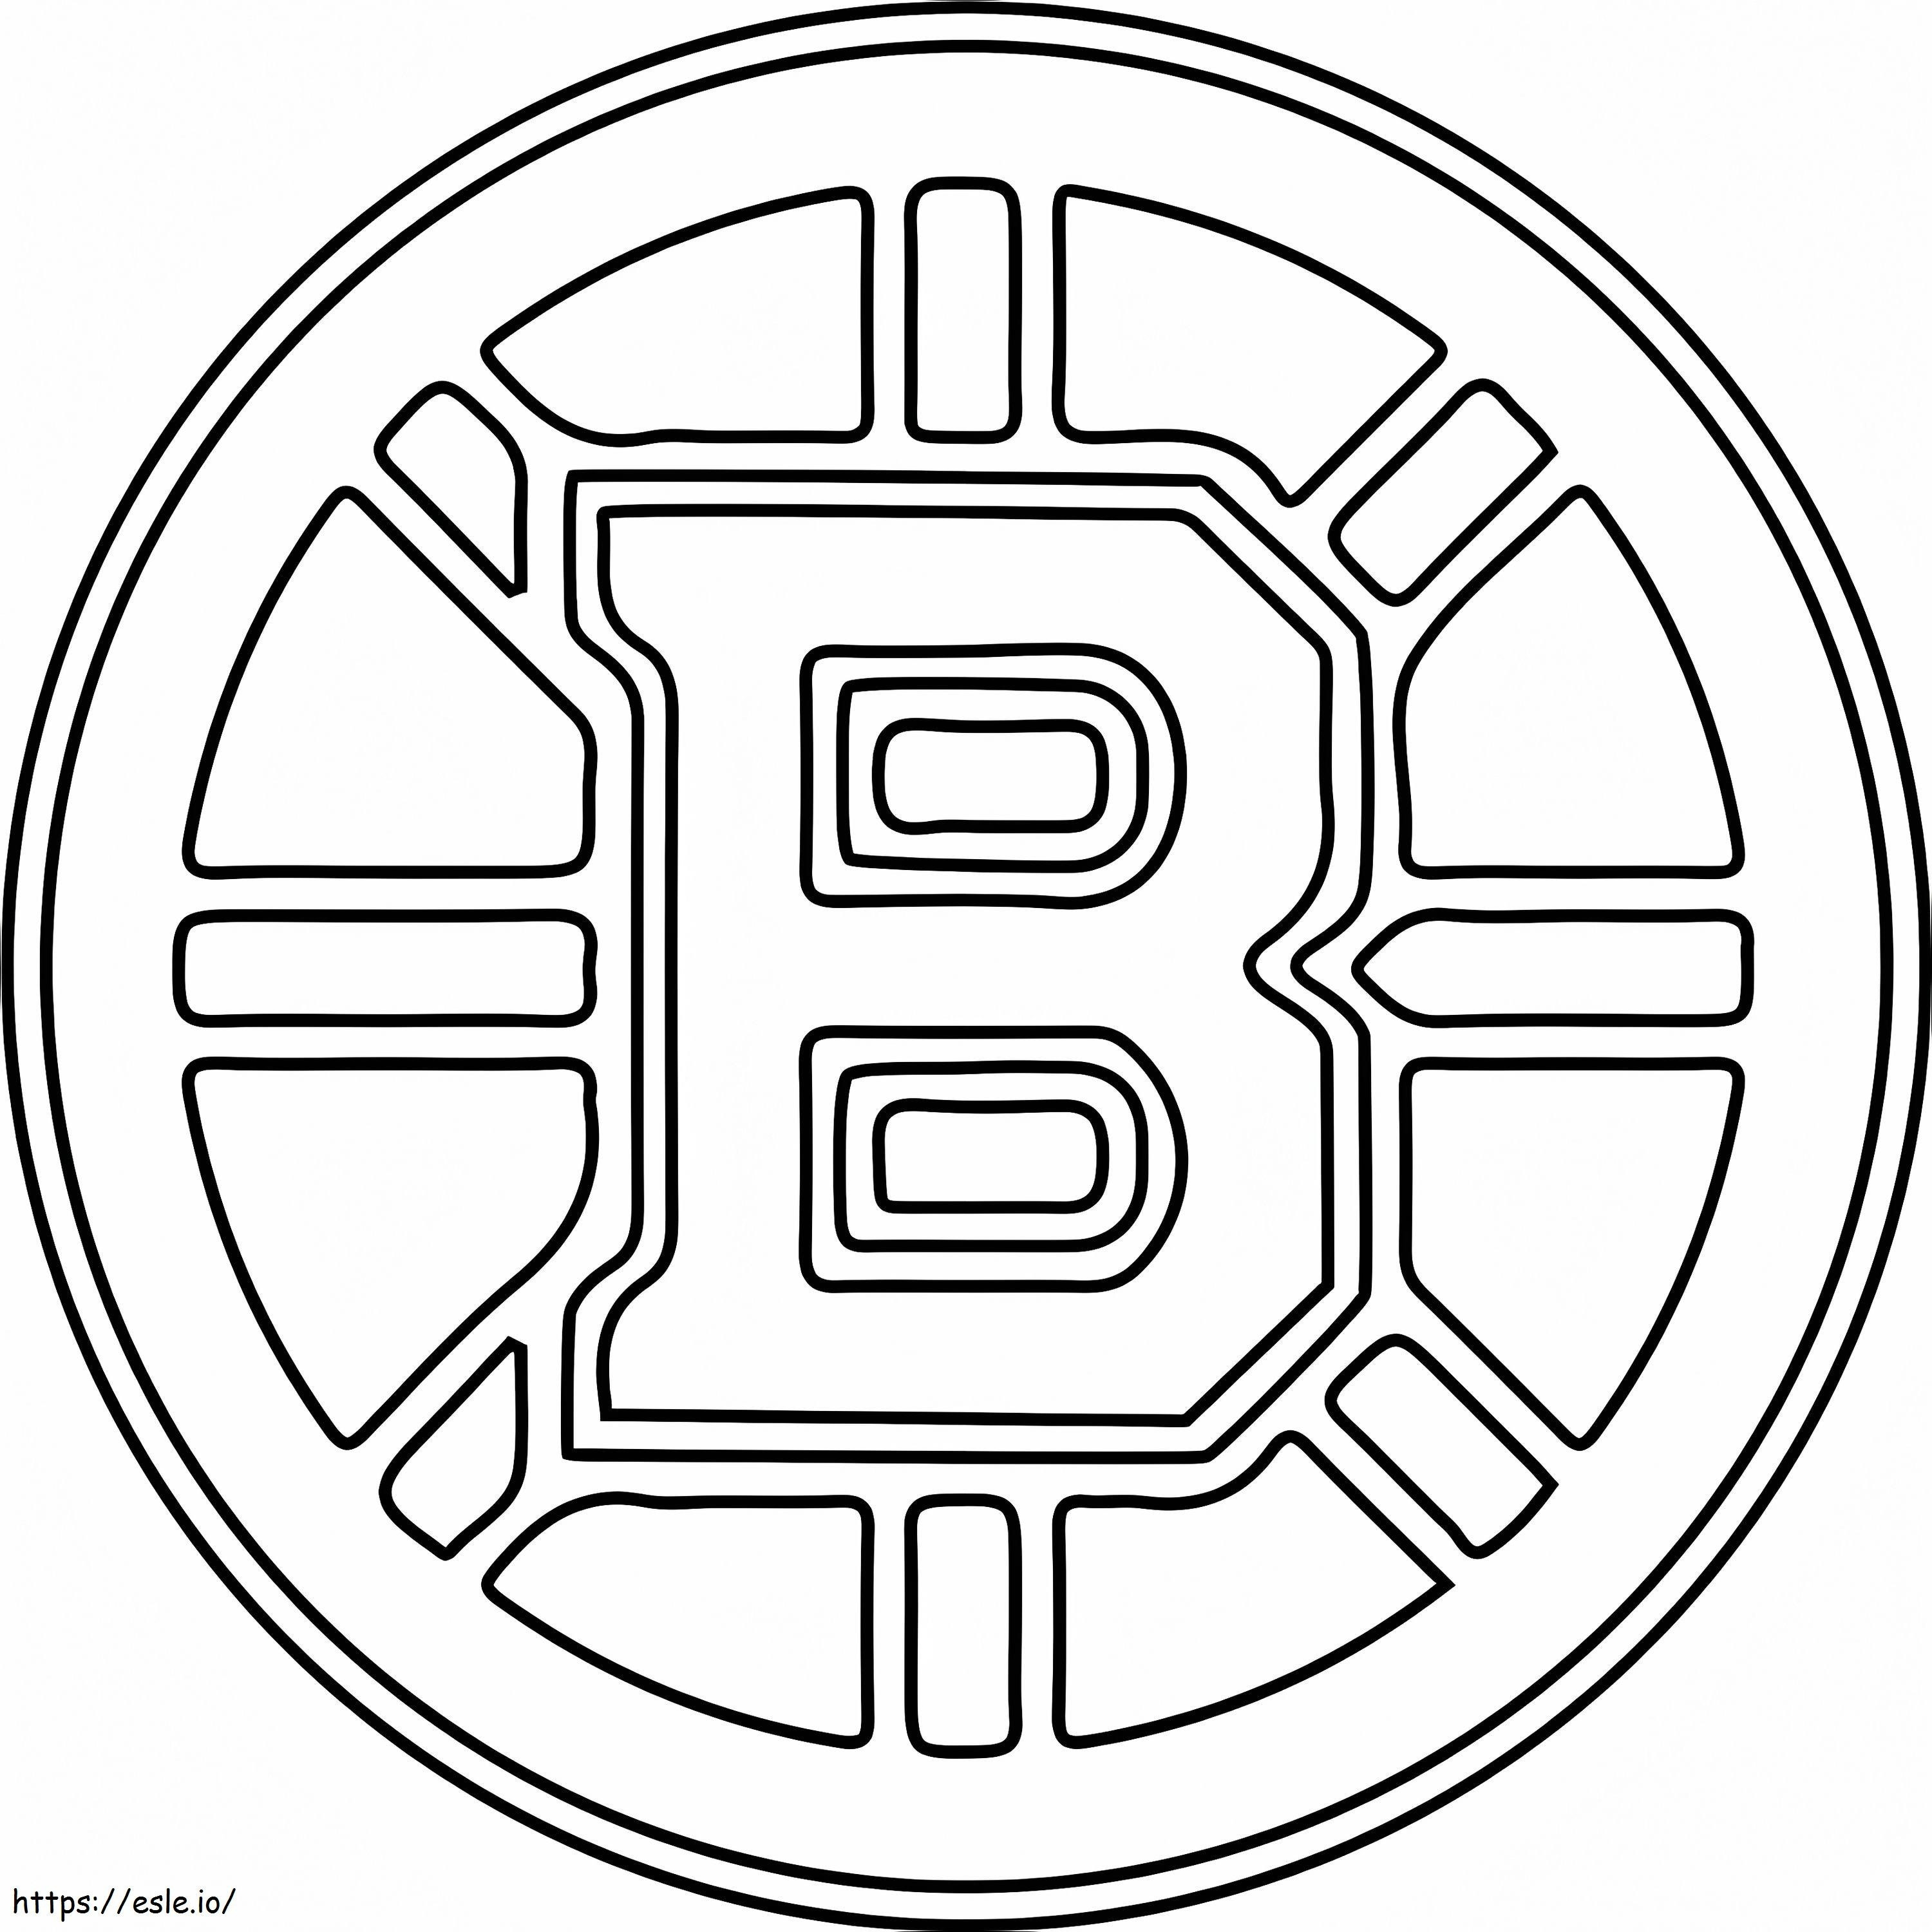 Logo dei Boston Bruins da colorare